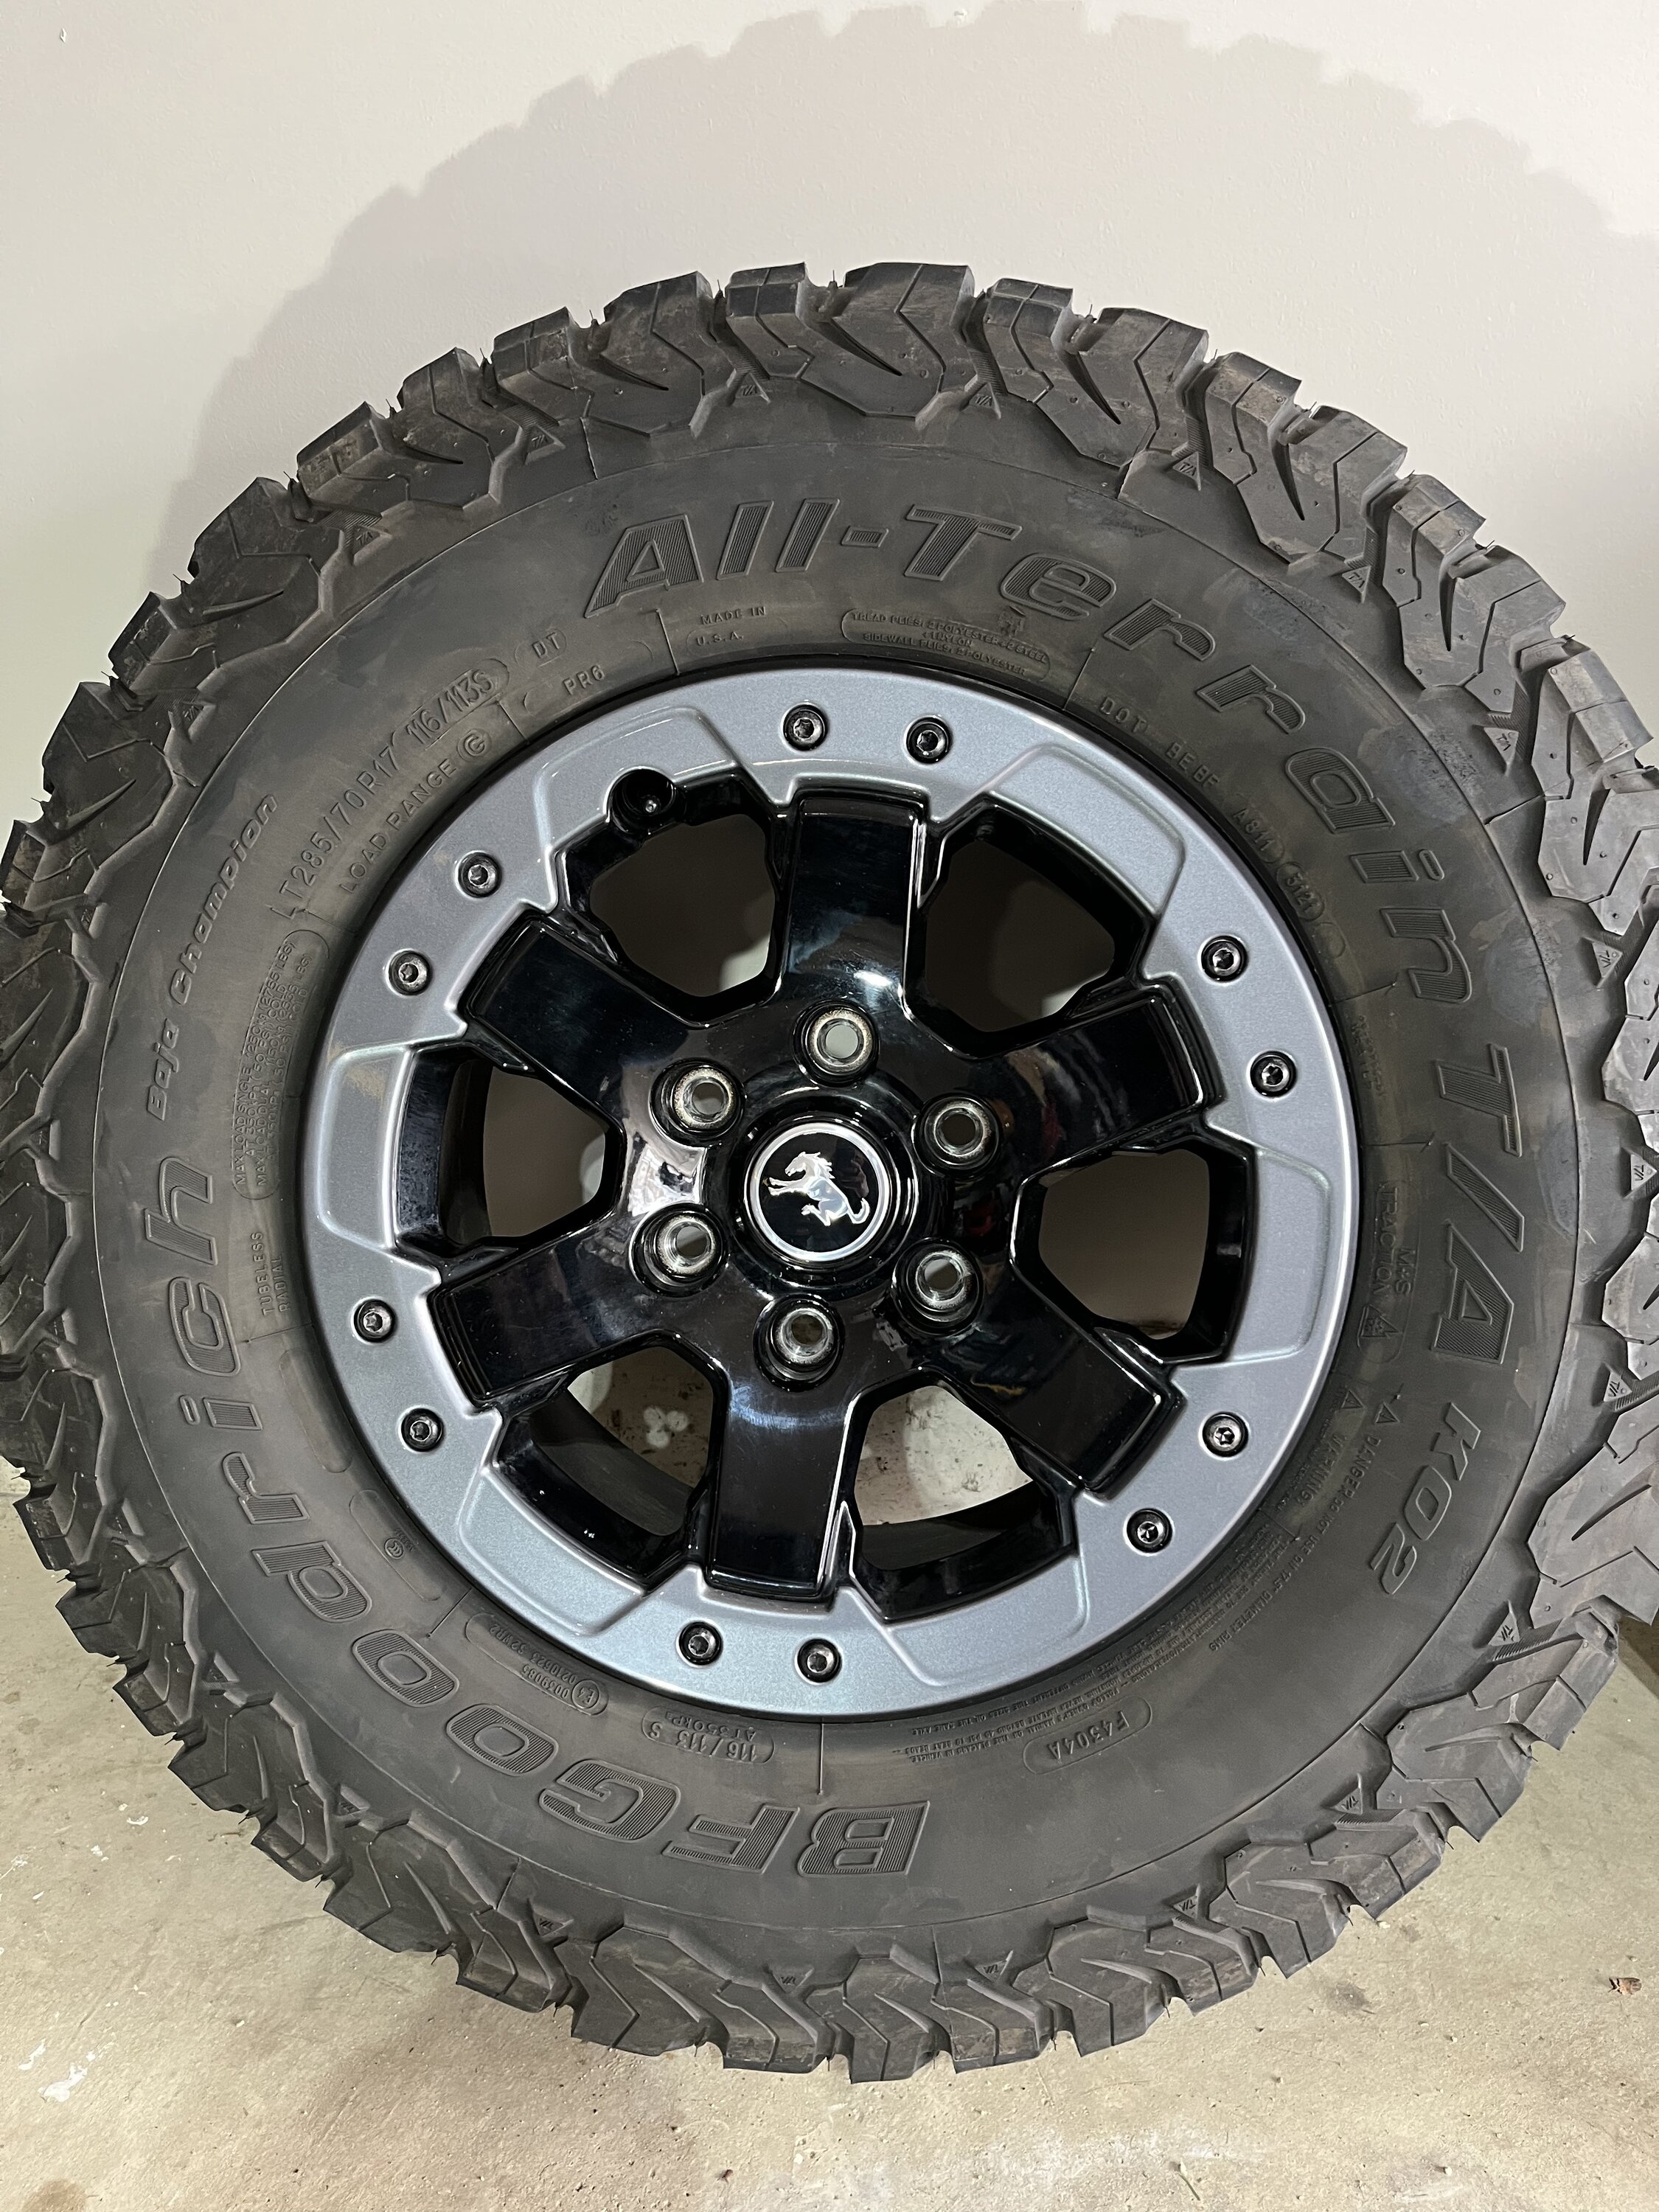 Ford Bronco Badlands Optional Rims and Tires 0F3AFC1D-4C3E-41F0-8614-F9F462B3D0EA